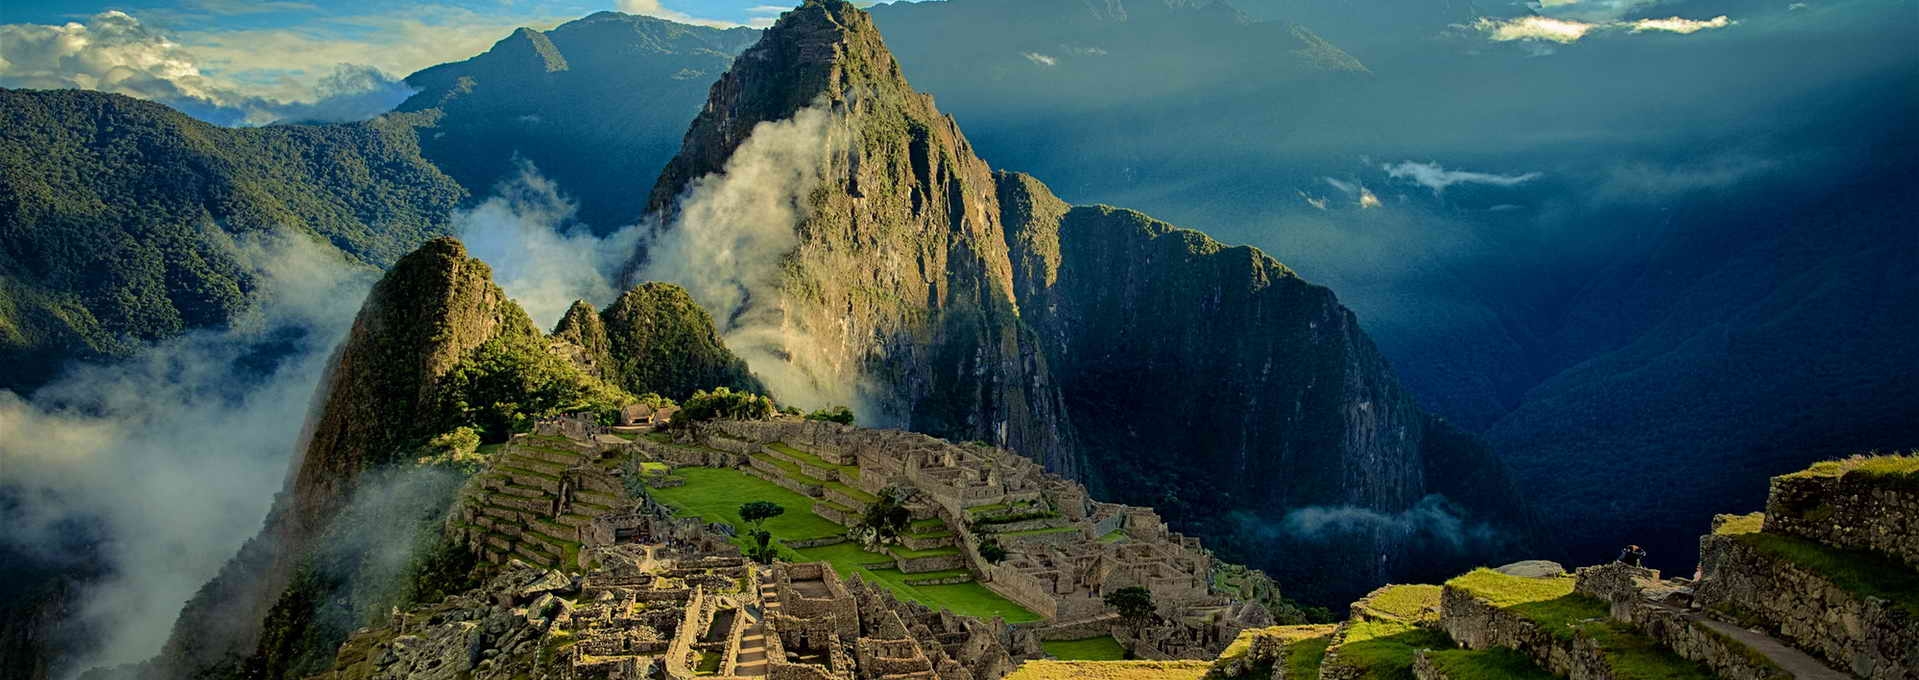 The magic of Machu Picchu